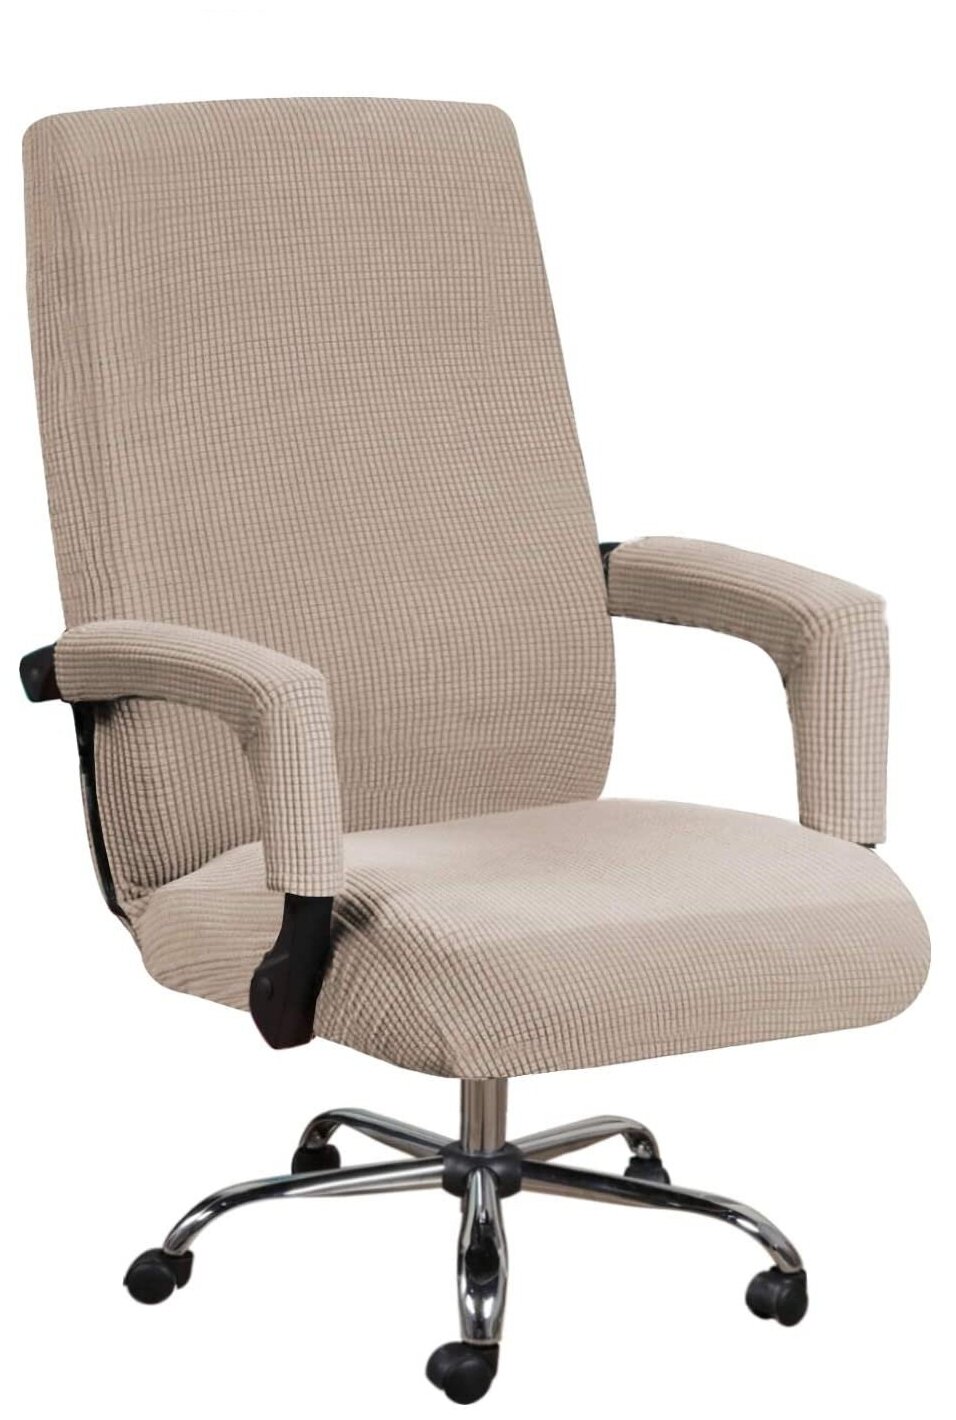 Чехол на стул, компьютерное кресло Crocus-Life A7-Beige, размер L, цвет: бежевый